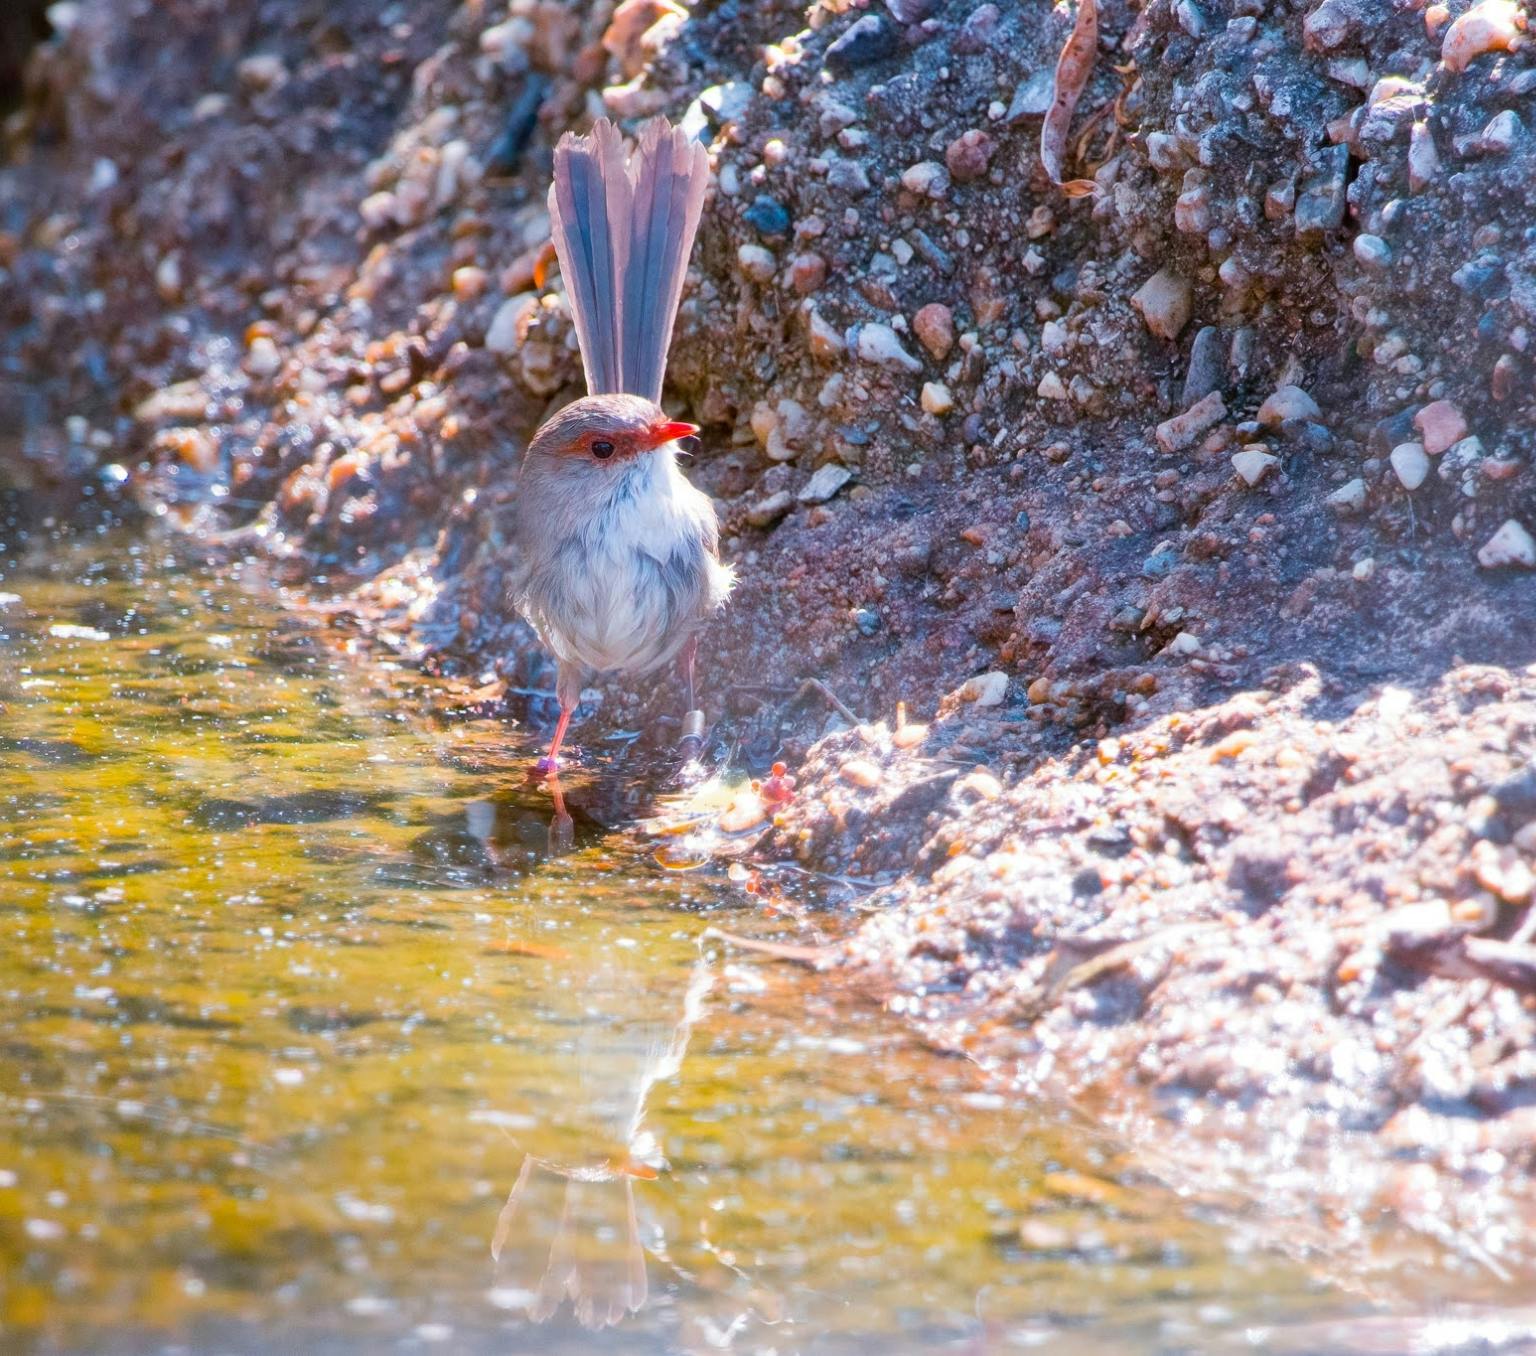 A superb fairy-wren bird cooling off at a creek